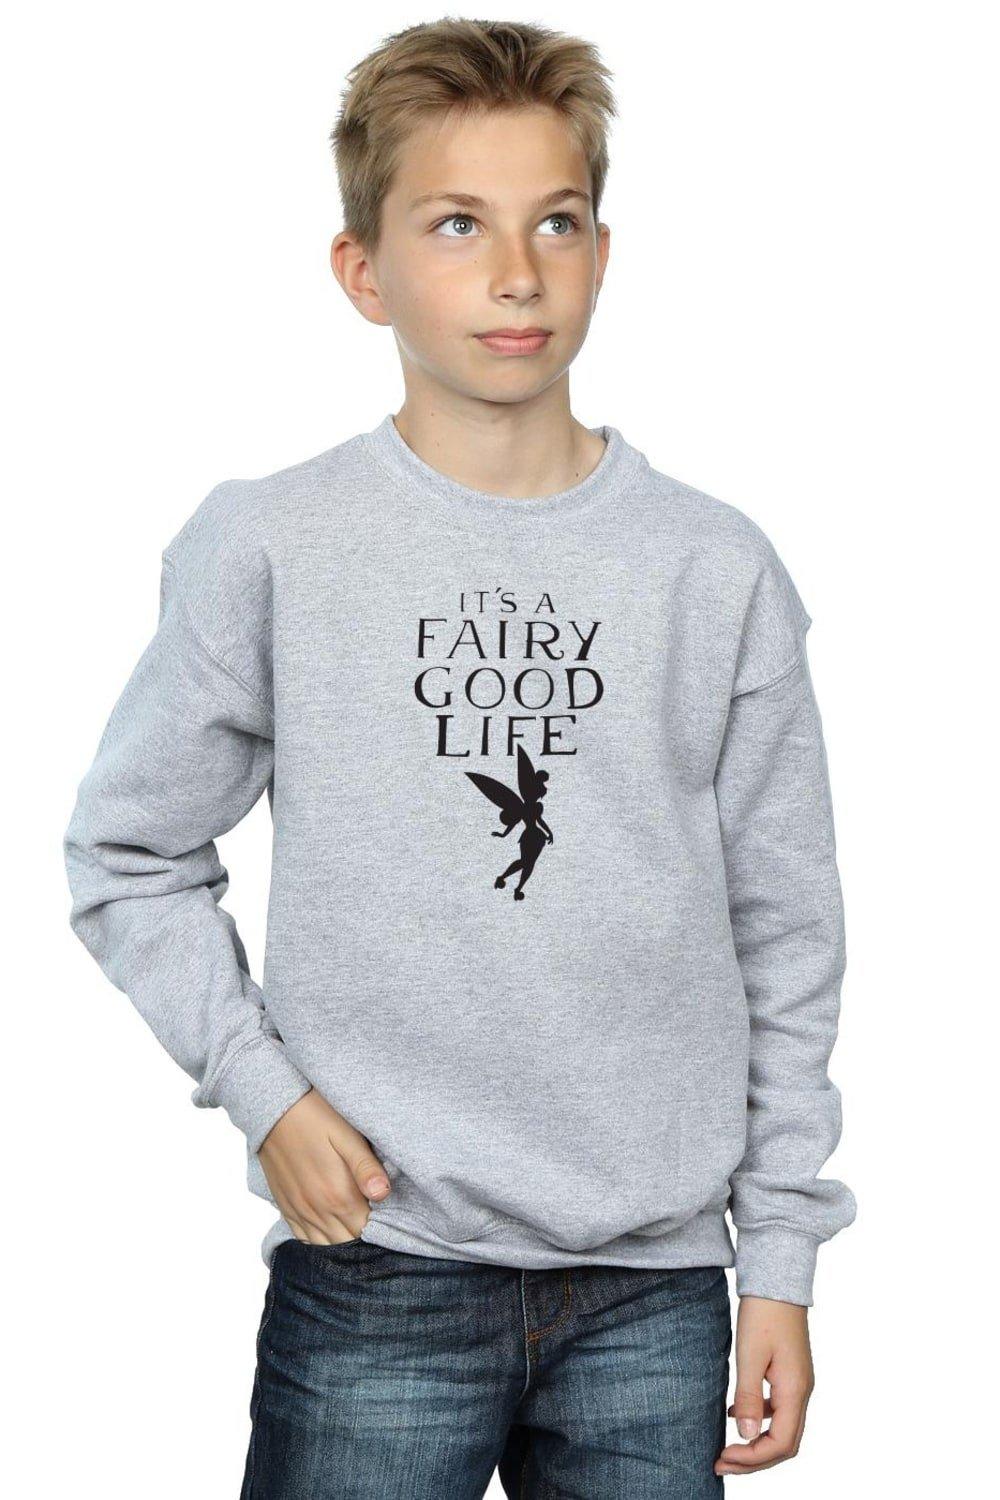 Tinkerbell Fairy Good Life Sweatshirt